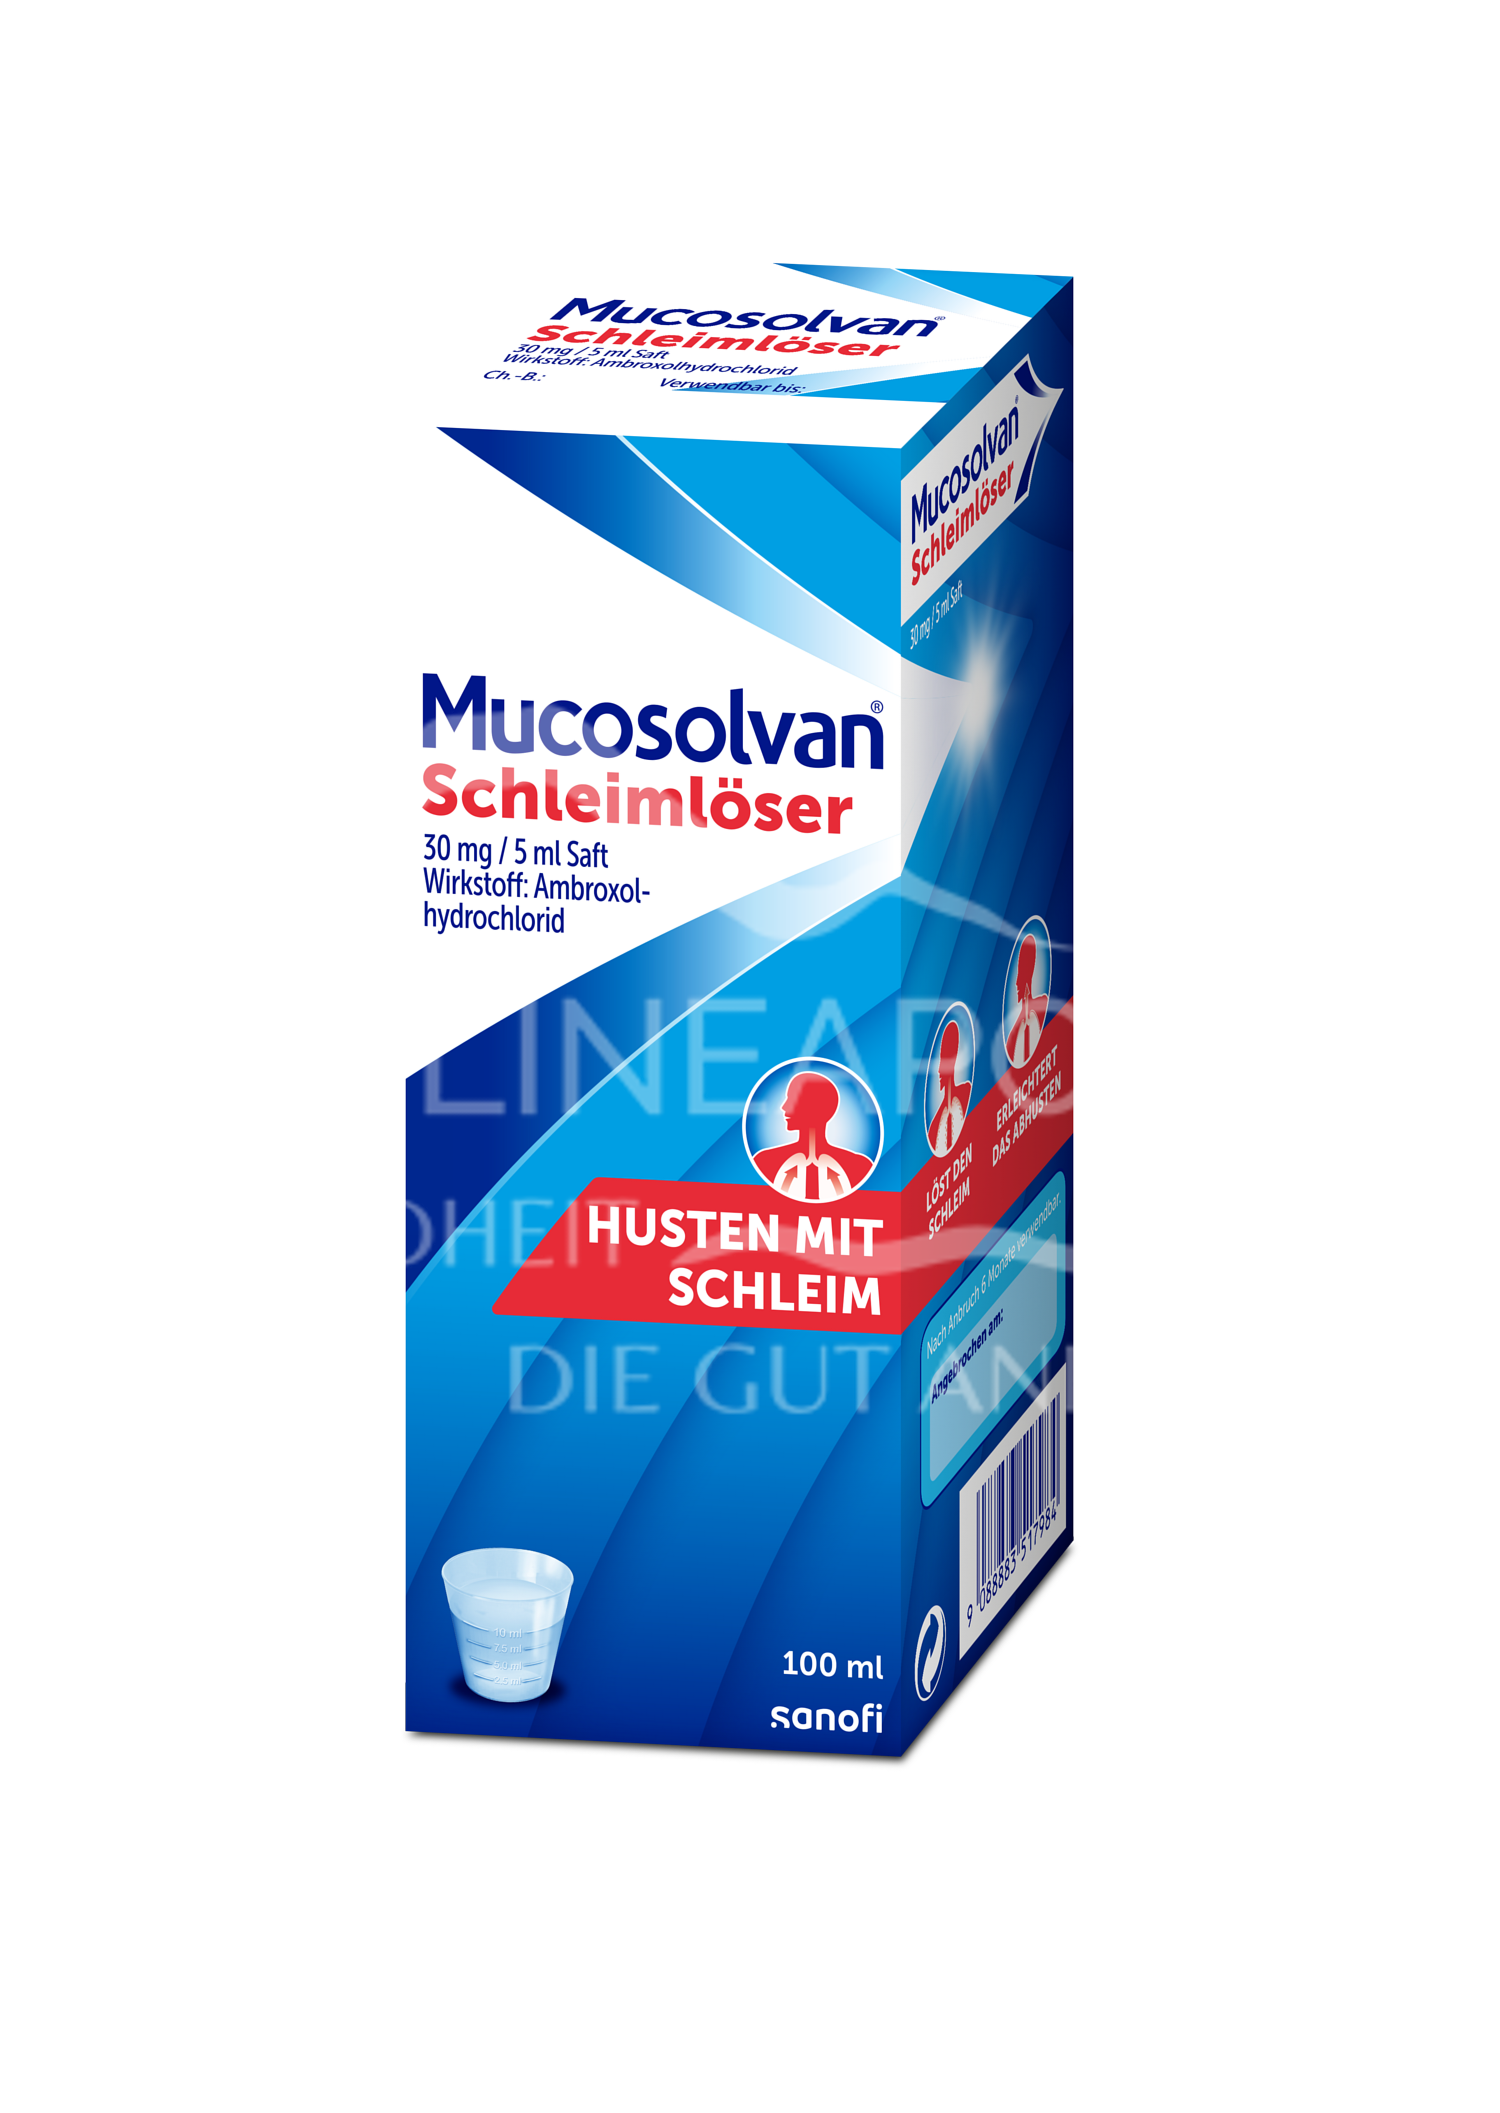 Mucosolvan® Schleimlöser 30 mg / 5 ml Saft  